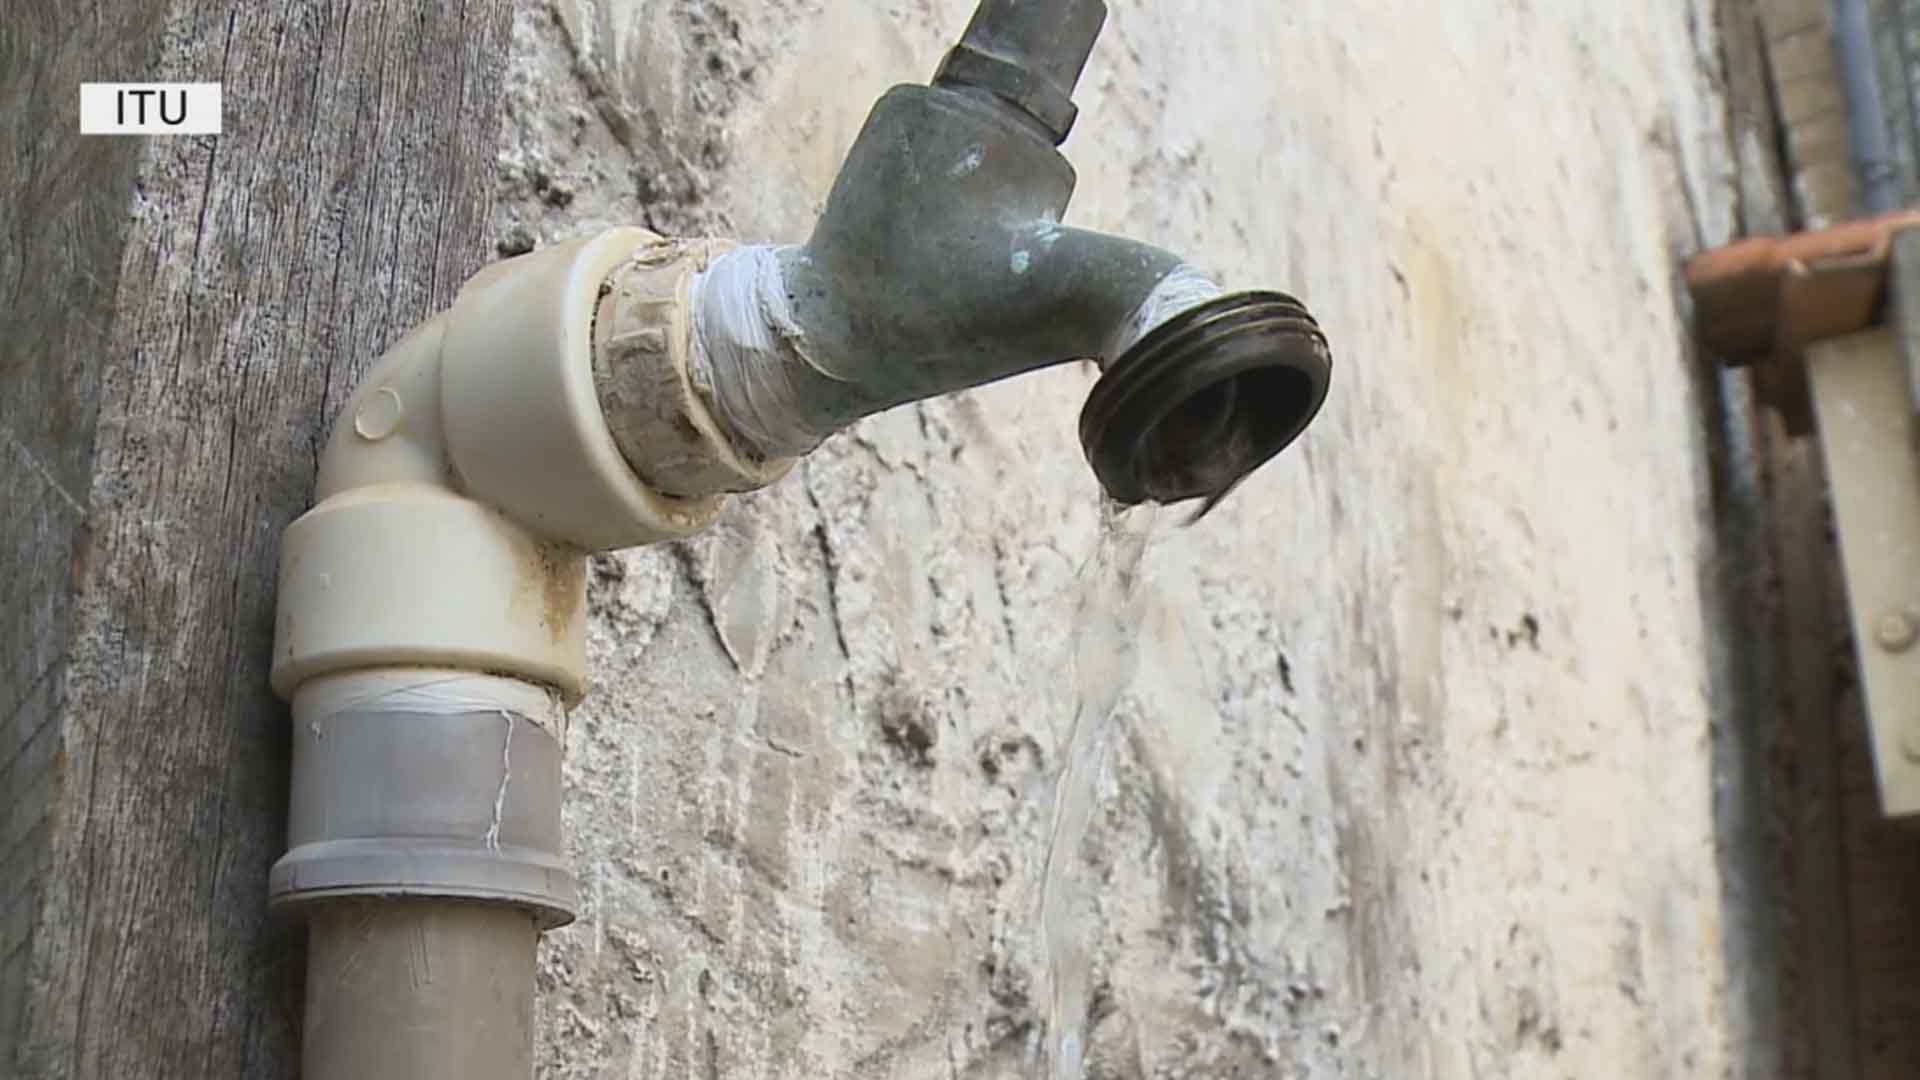 Moradores de Itu enfrentam problemas com o fornecimento de água